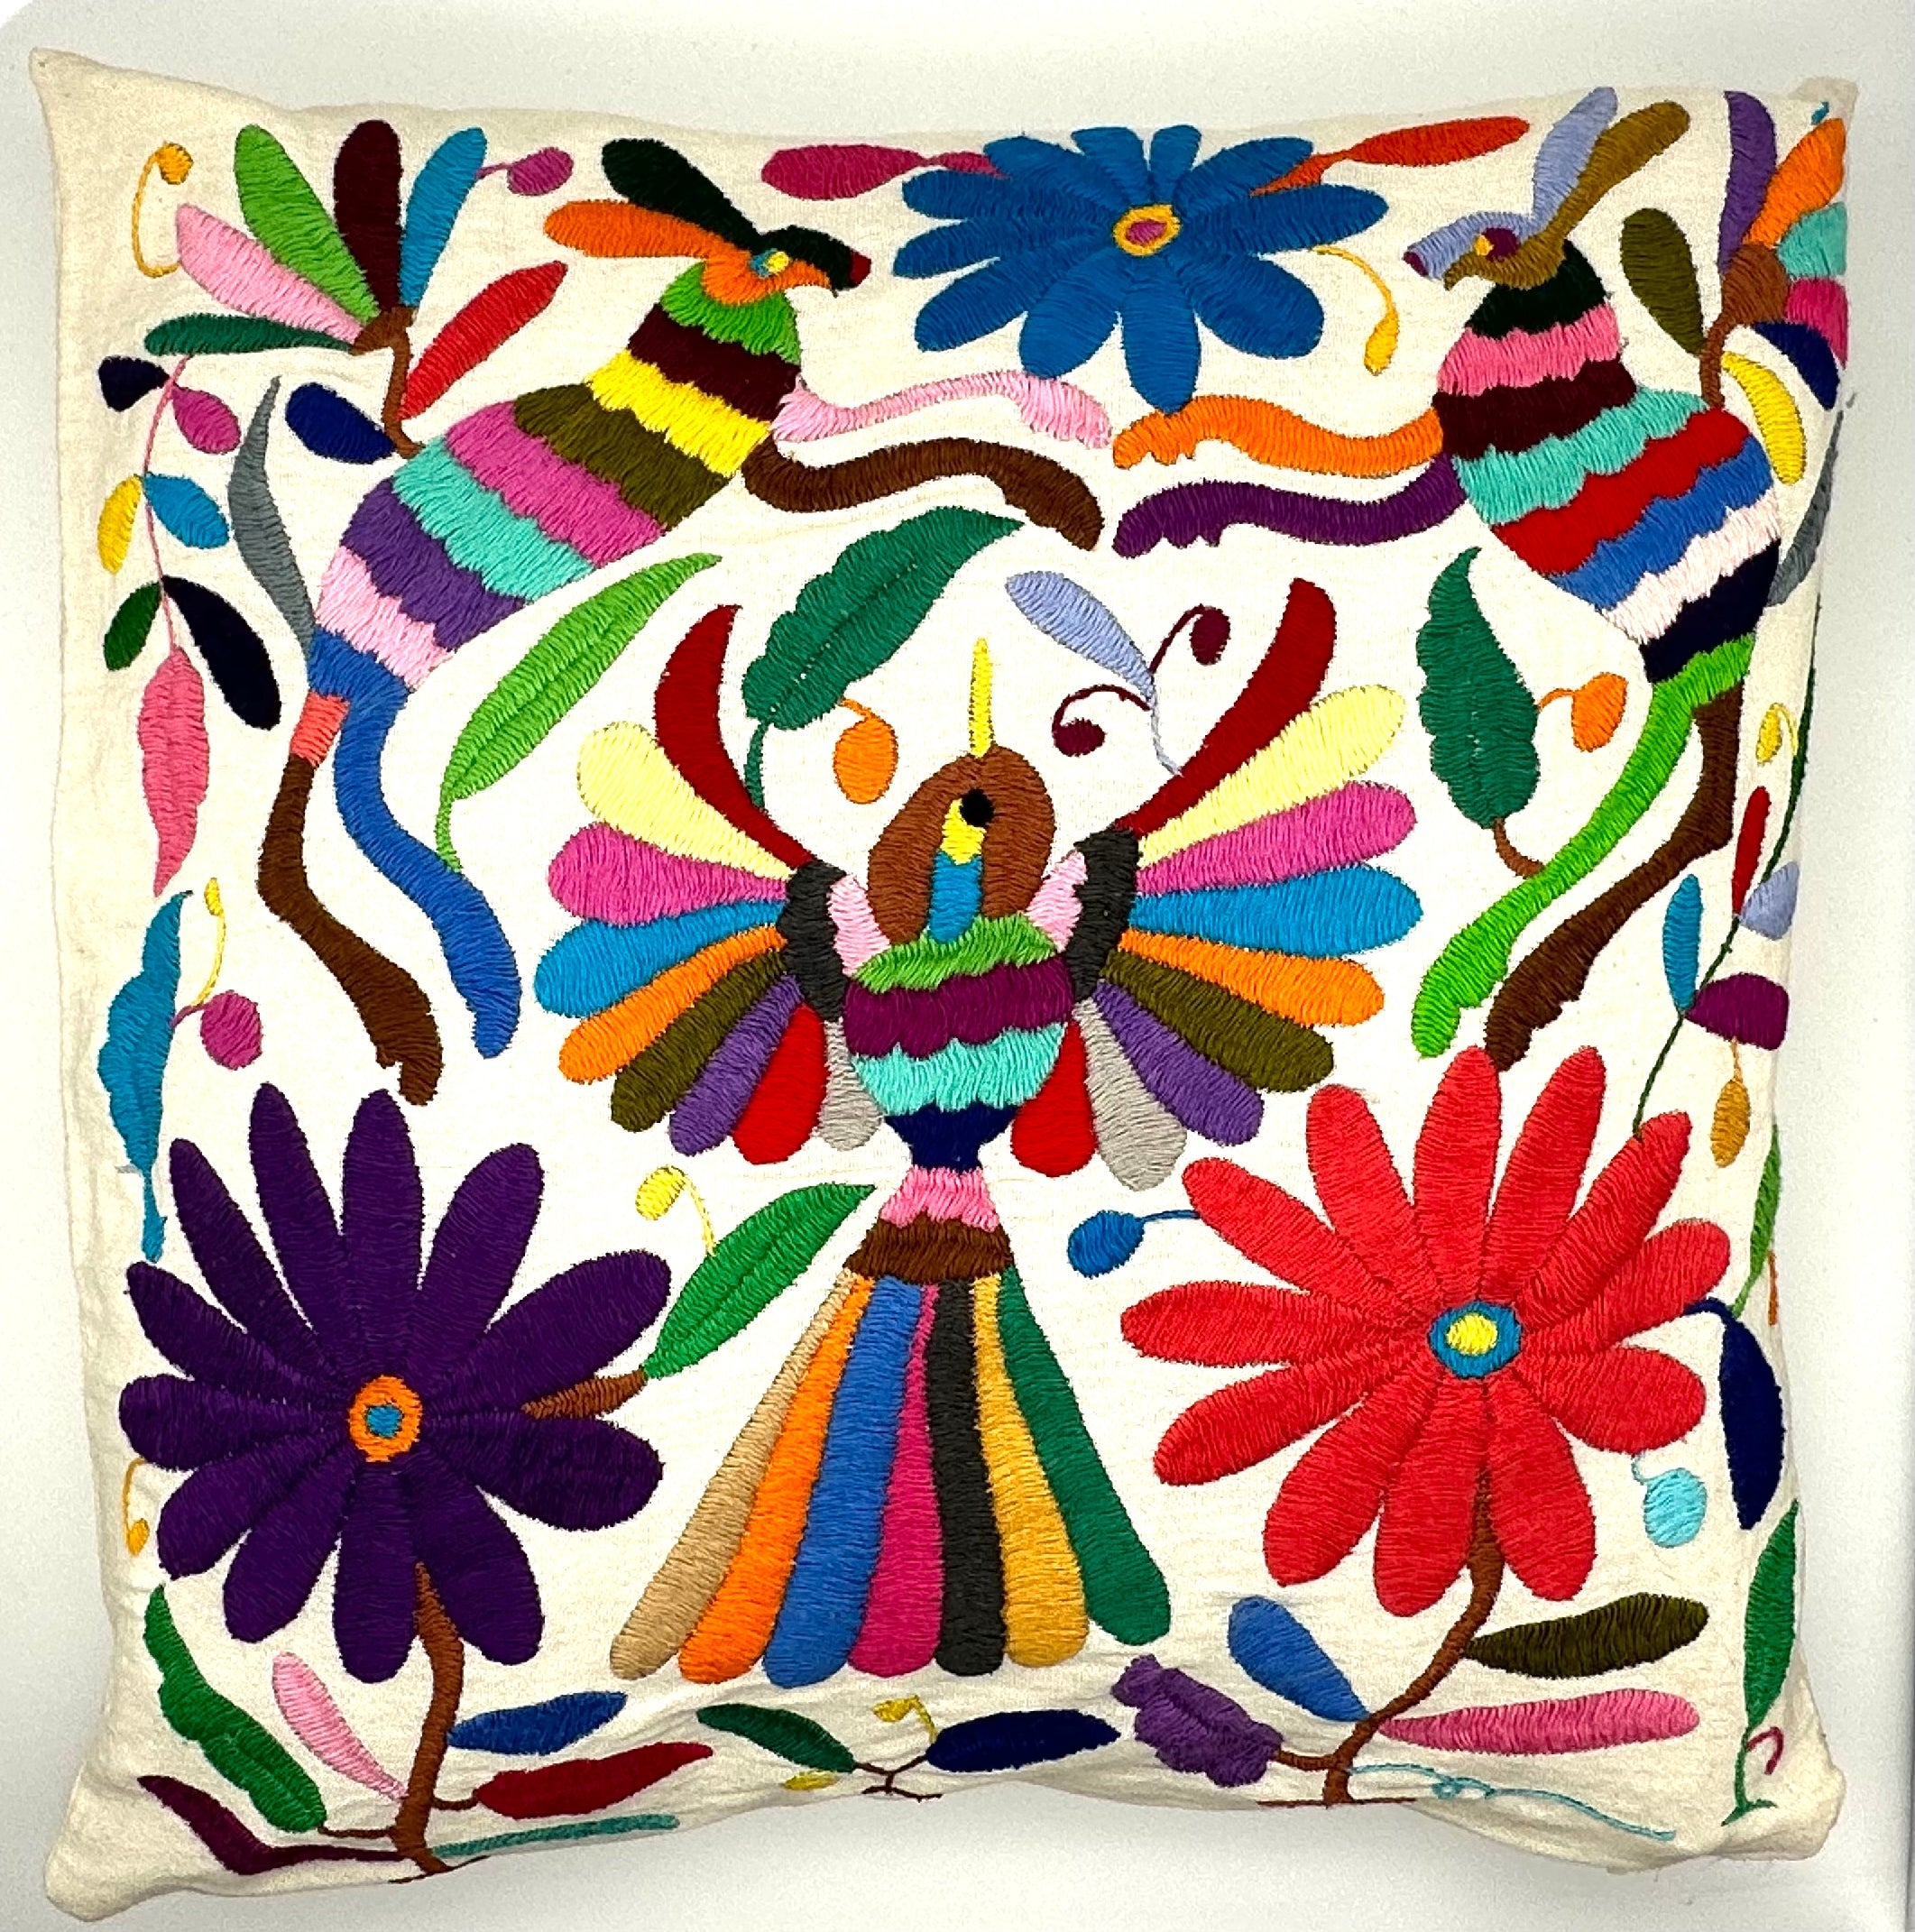 Housses de Coussin Otomi Exquises Brodées à la Main - Multicolore (45x45cm)